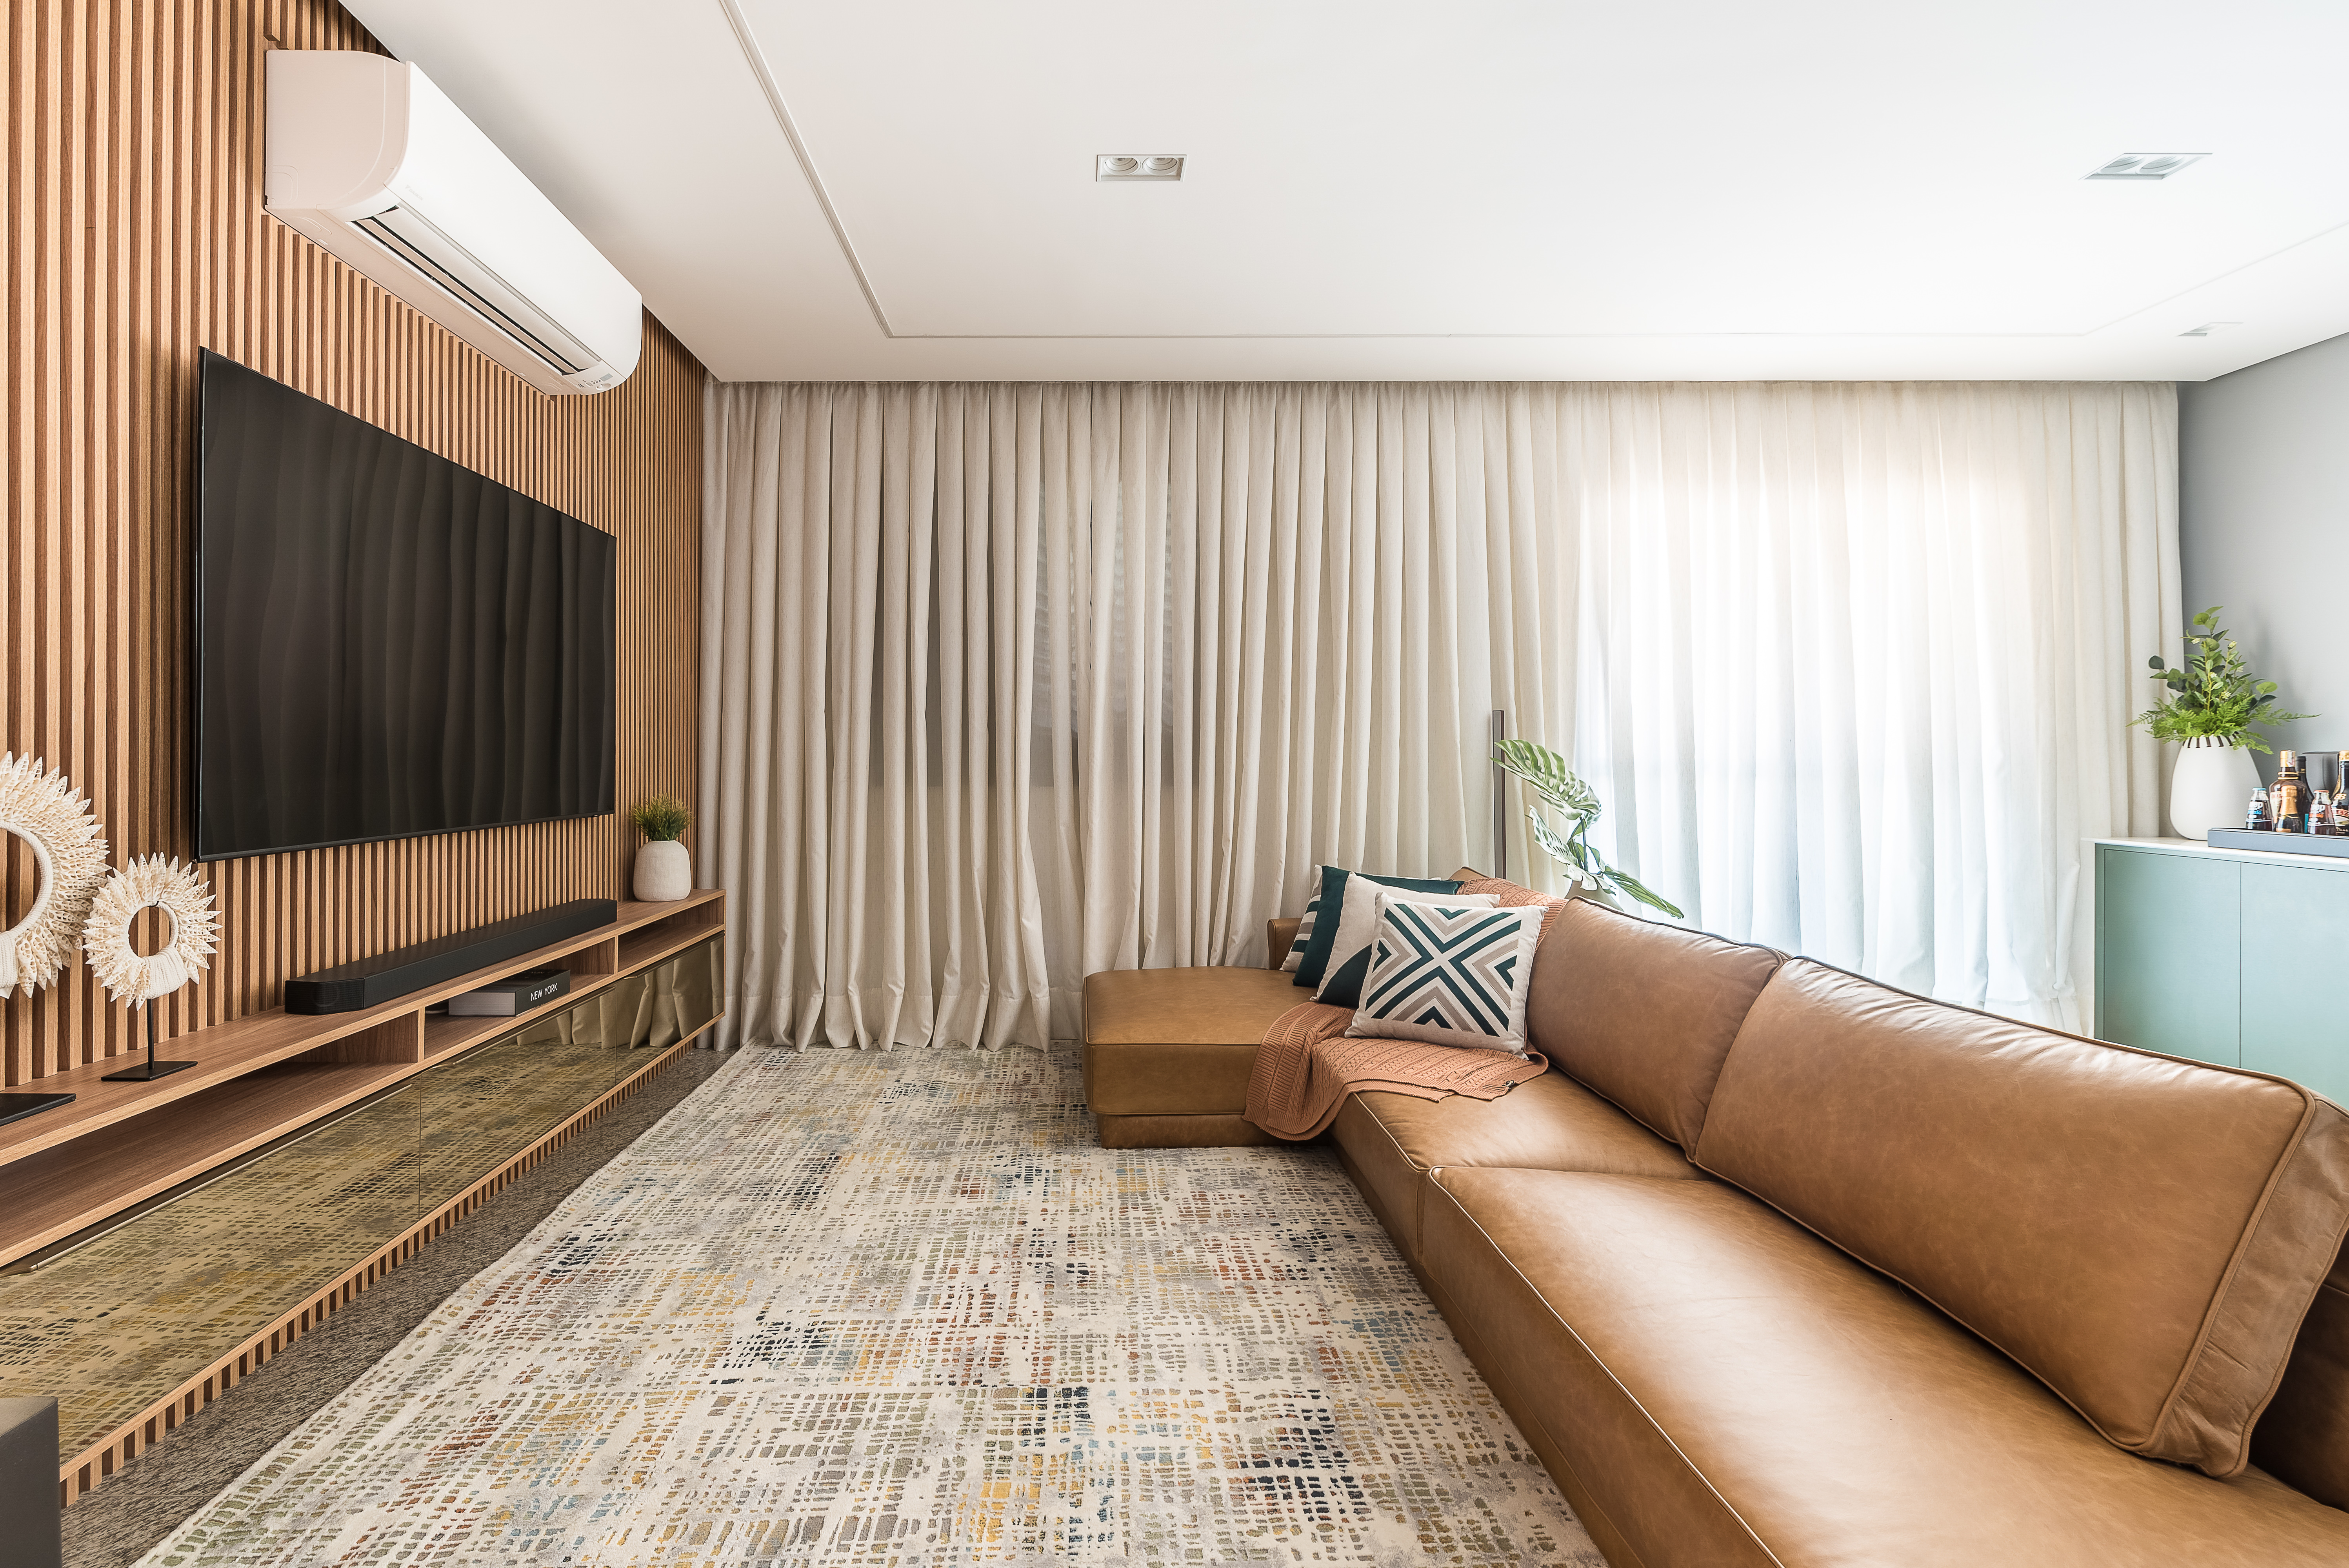 Projeto de Clareira Arquitetura. Na foto, sala de estar com painel ripado, sofá de couro e cortina.